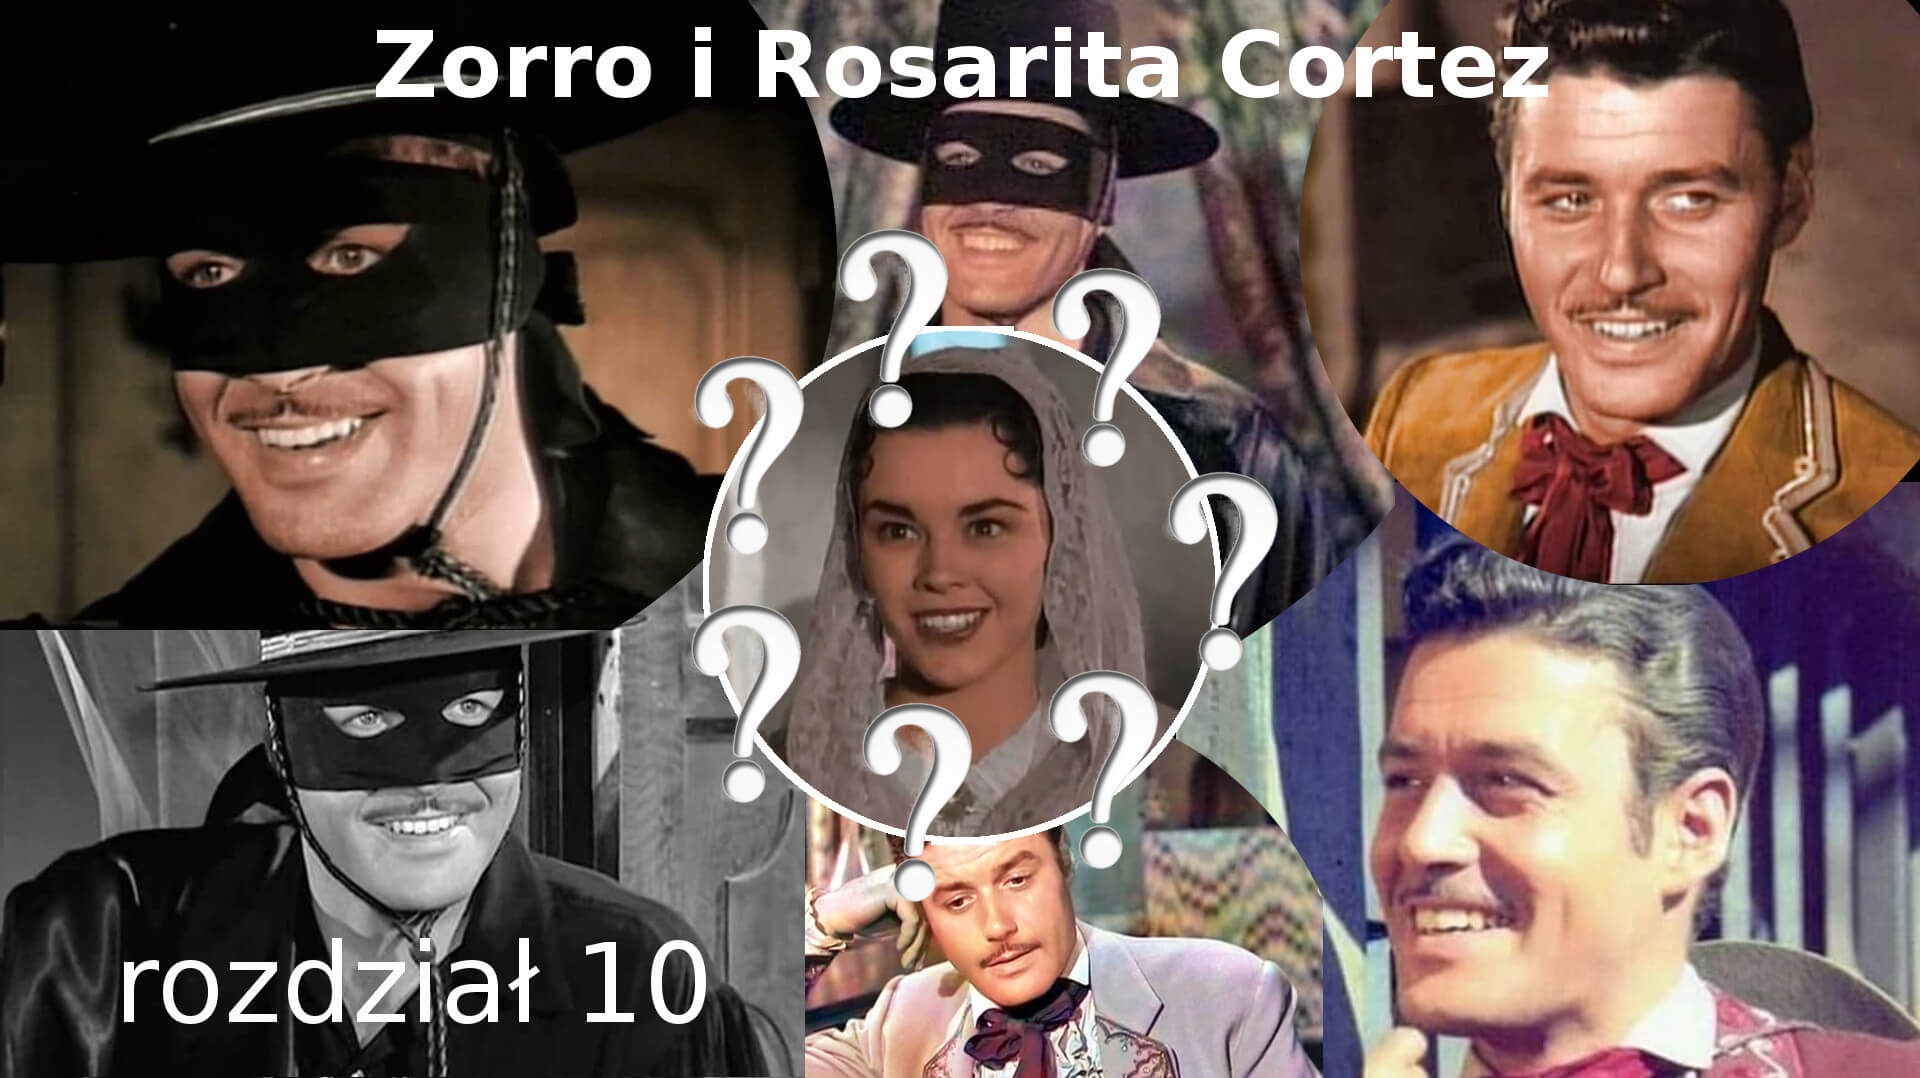 Zorro i Rosarita Cortez rozdział 10 Zorro fanfiction